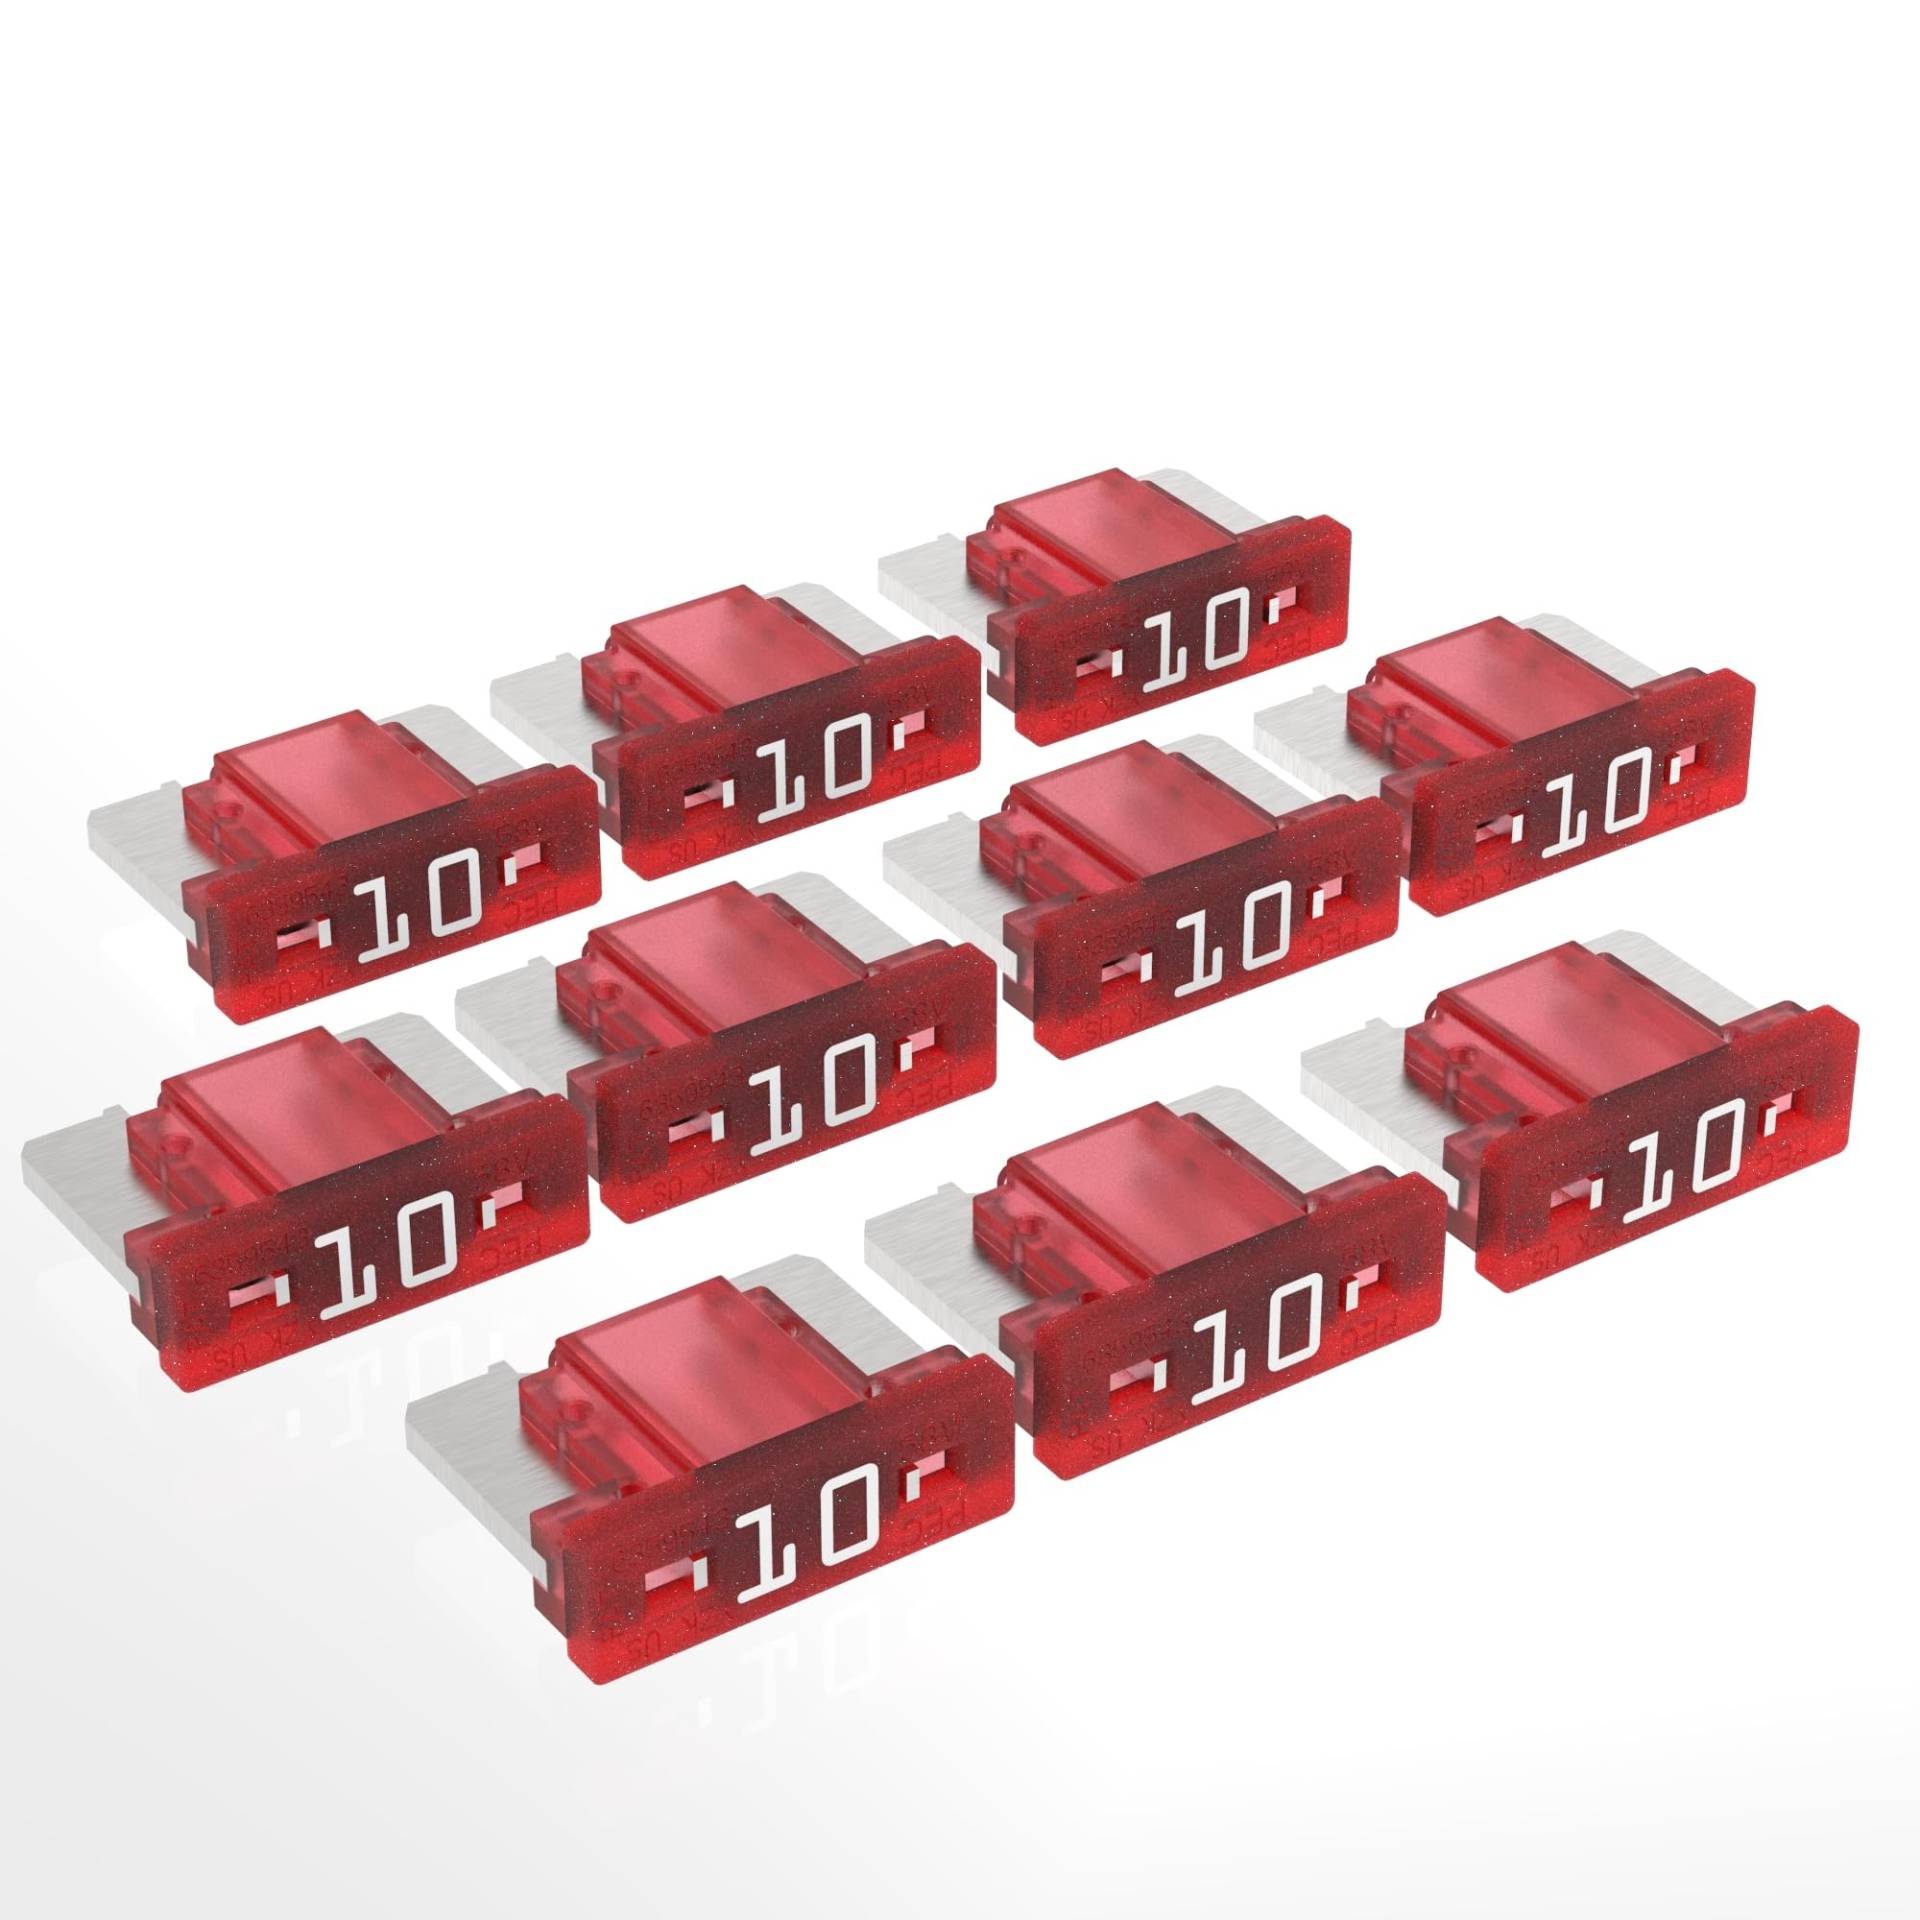 AUPROTEC Mini LP Kfz Sicherungen Flachstecksicherungen 2A - 30A Auswahl: 10A Ampere rot, 10 Stück von AUPROTEC